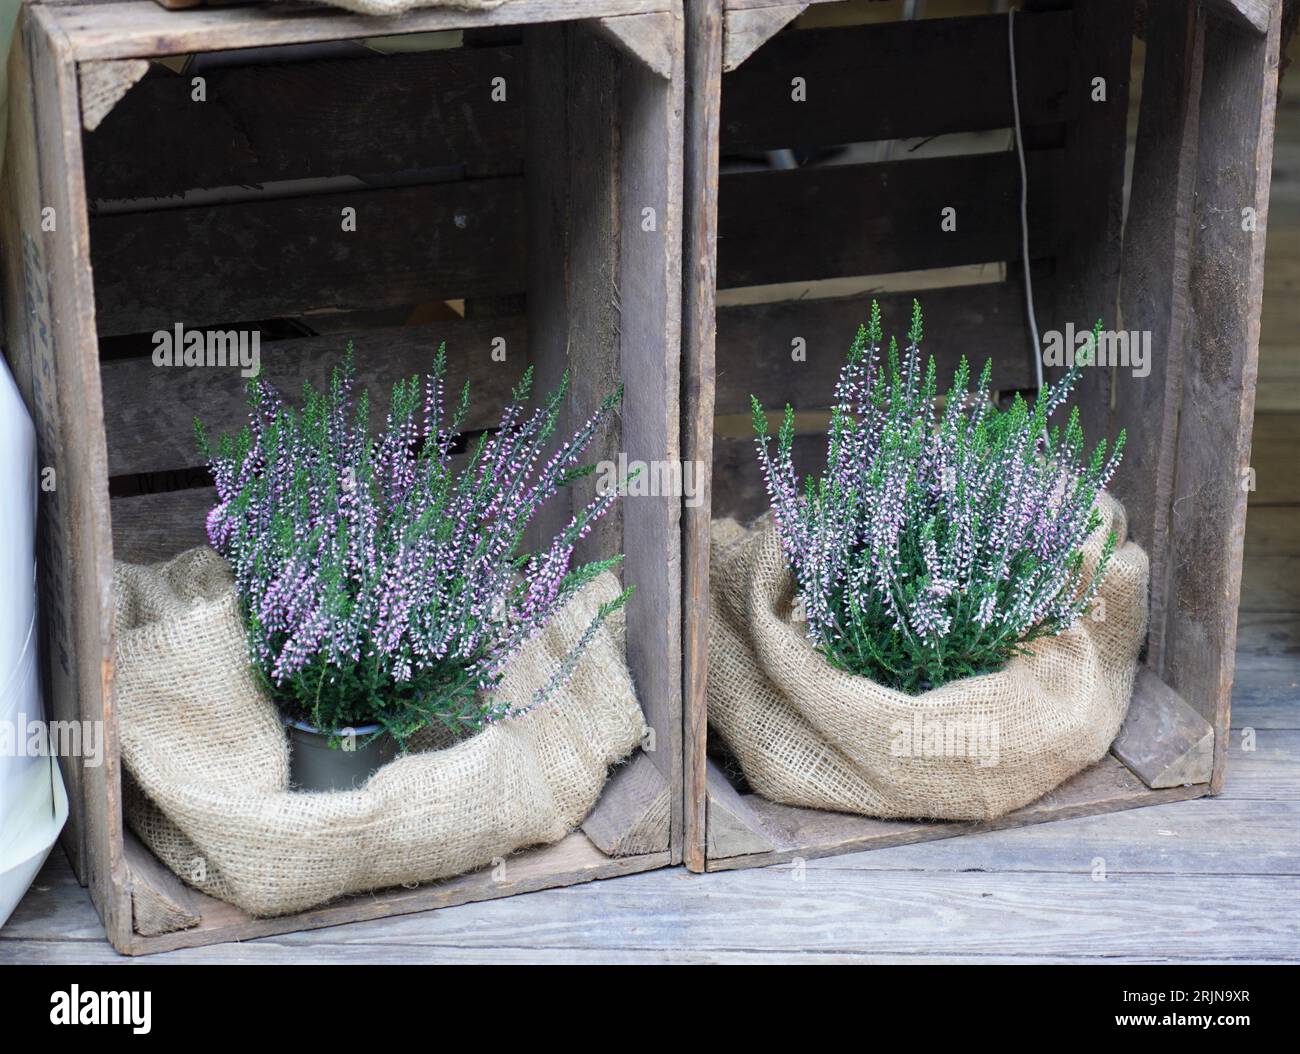 Un'attraente cassa di legno piena di fragranti piante di lavanda si trova sul portico di una casa, aggiungendo un tocco di bellezza e un piacevole profumo Foto Stock